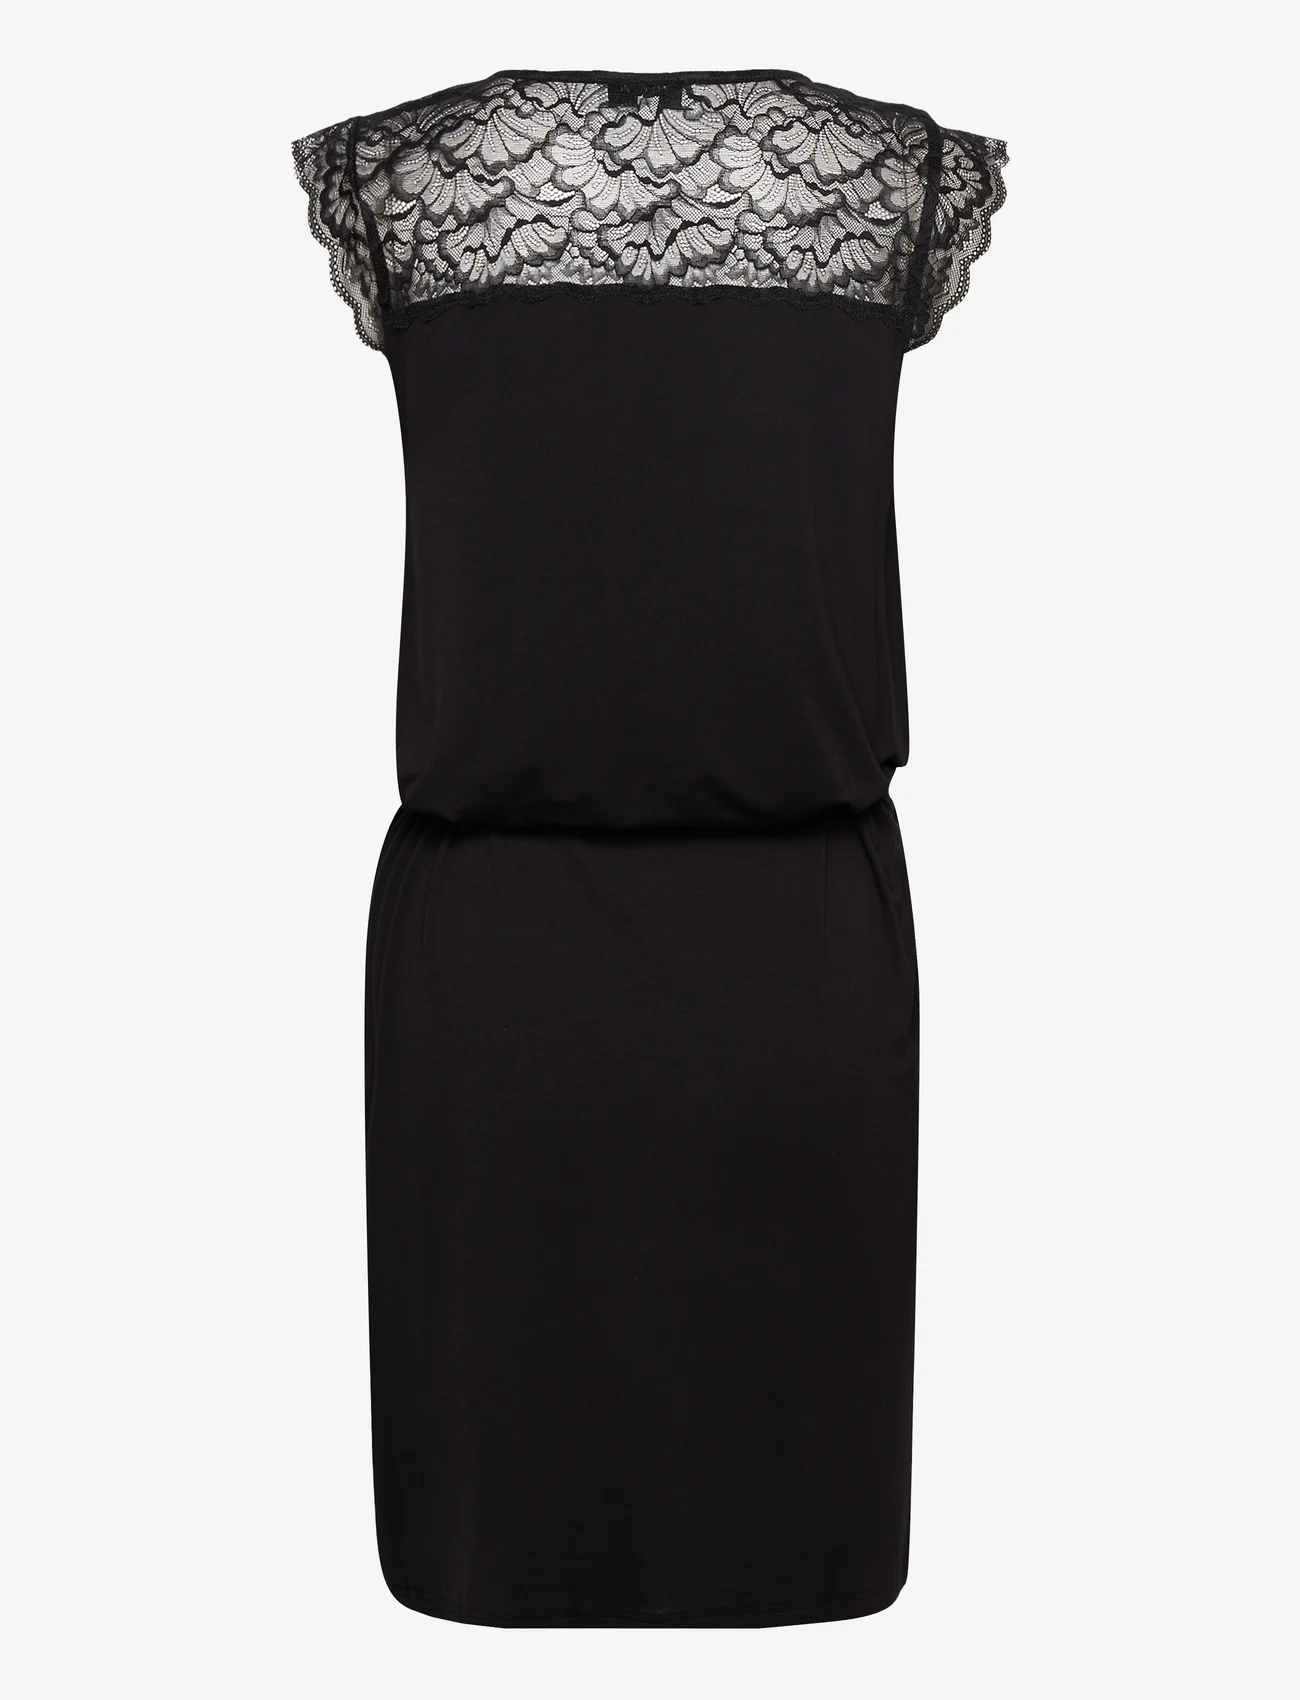 Rosemunde - Dress - odzież imprezowa w cenach outletowych - black - 1